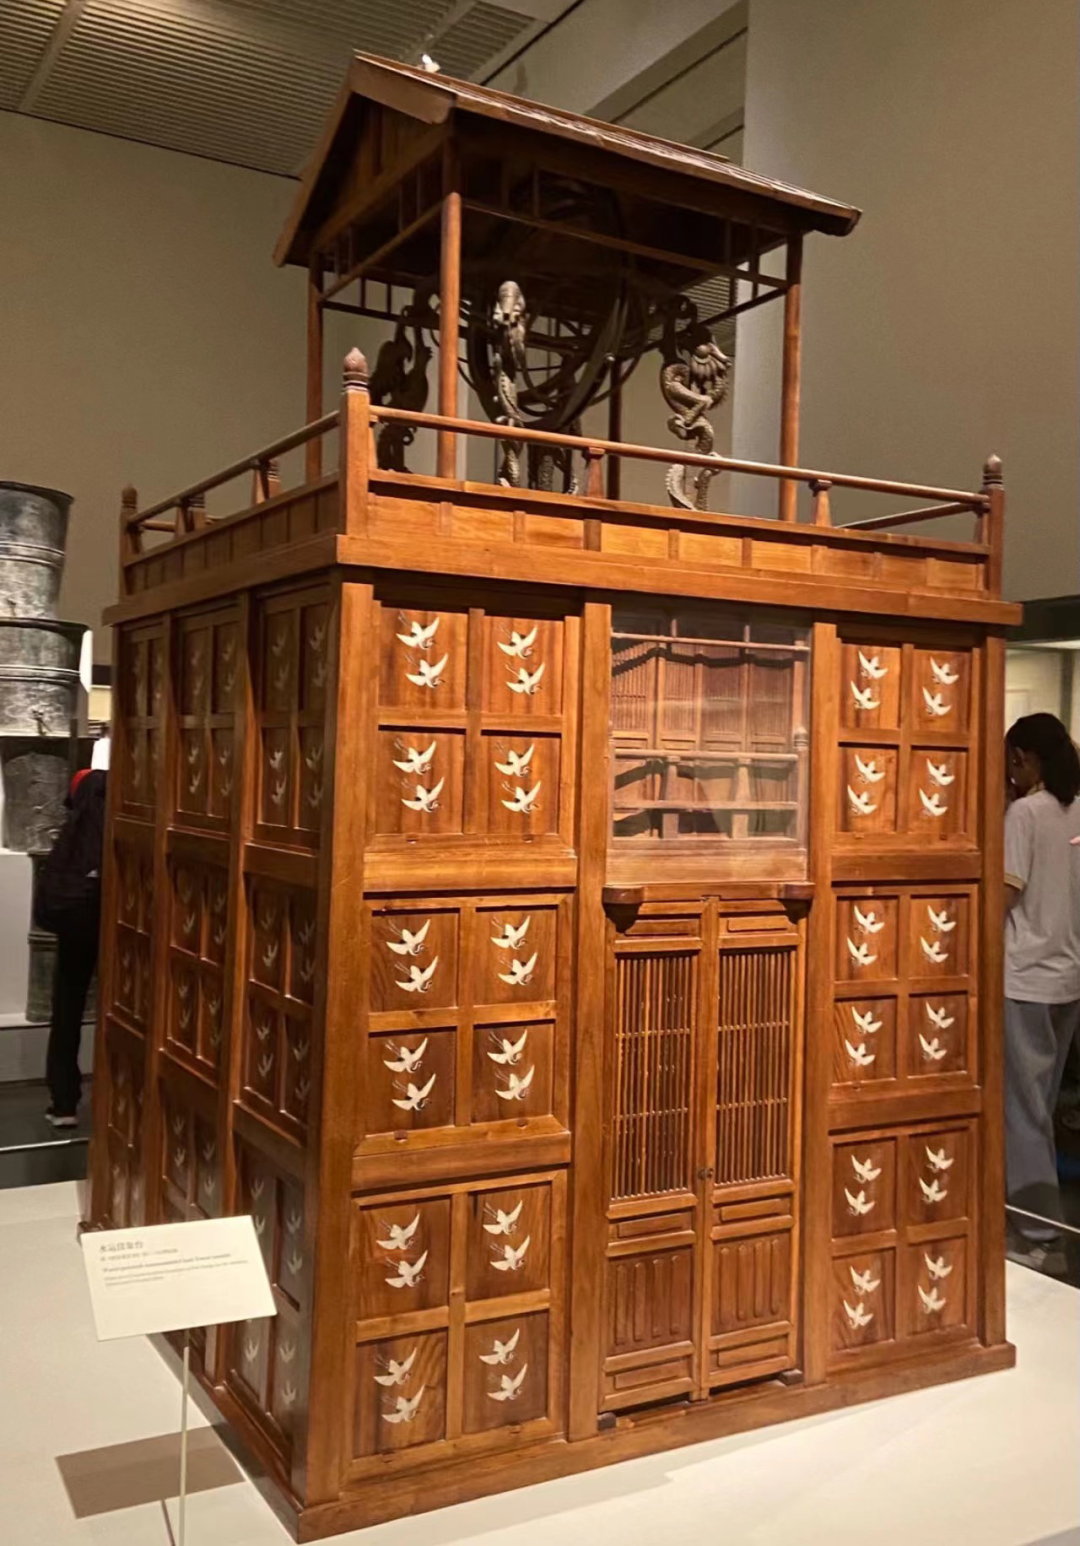 水运浑天仪，最早发明于唐代，摄于中国国家博物馆展厅。